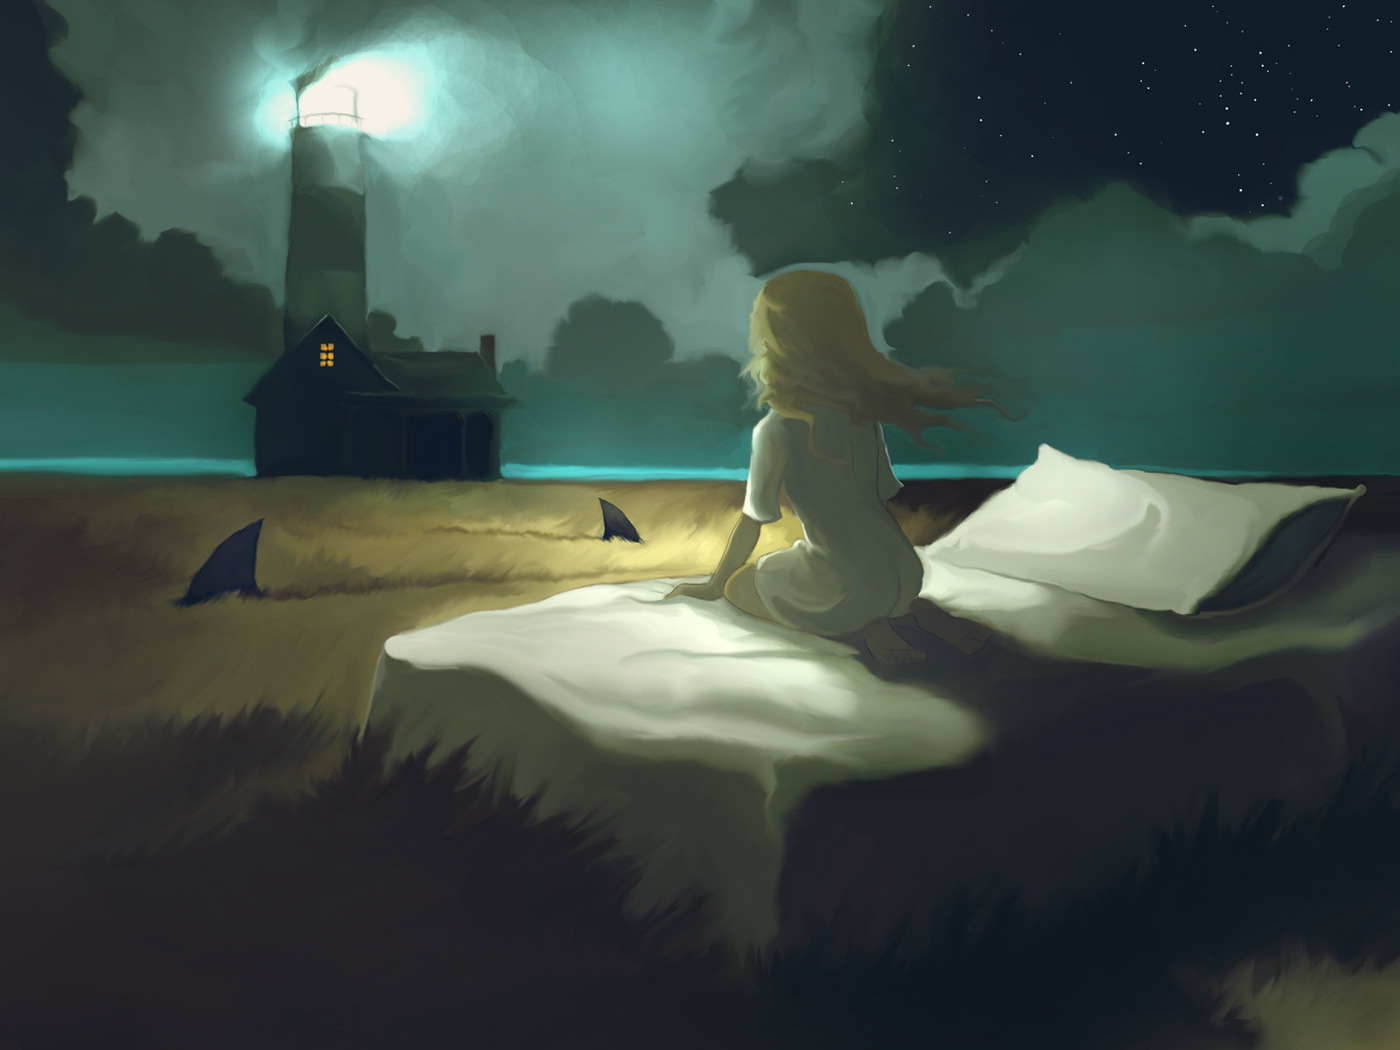 3d обои Девочке снится, что она сидит на своей кровати в поле, в котором плавают акулы, а за ее домом стоит маяк  ночь # 67333